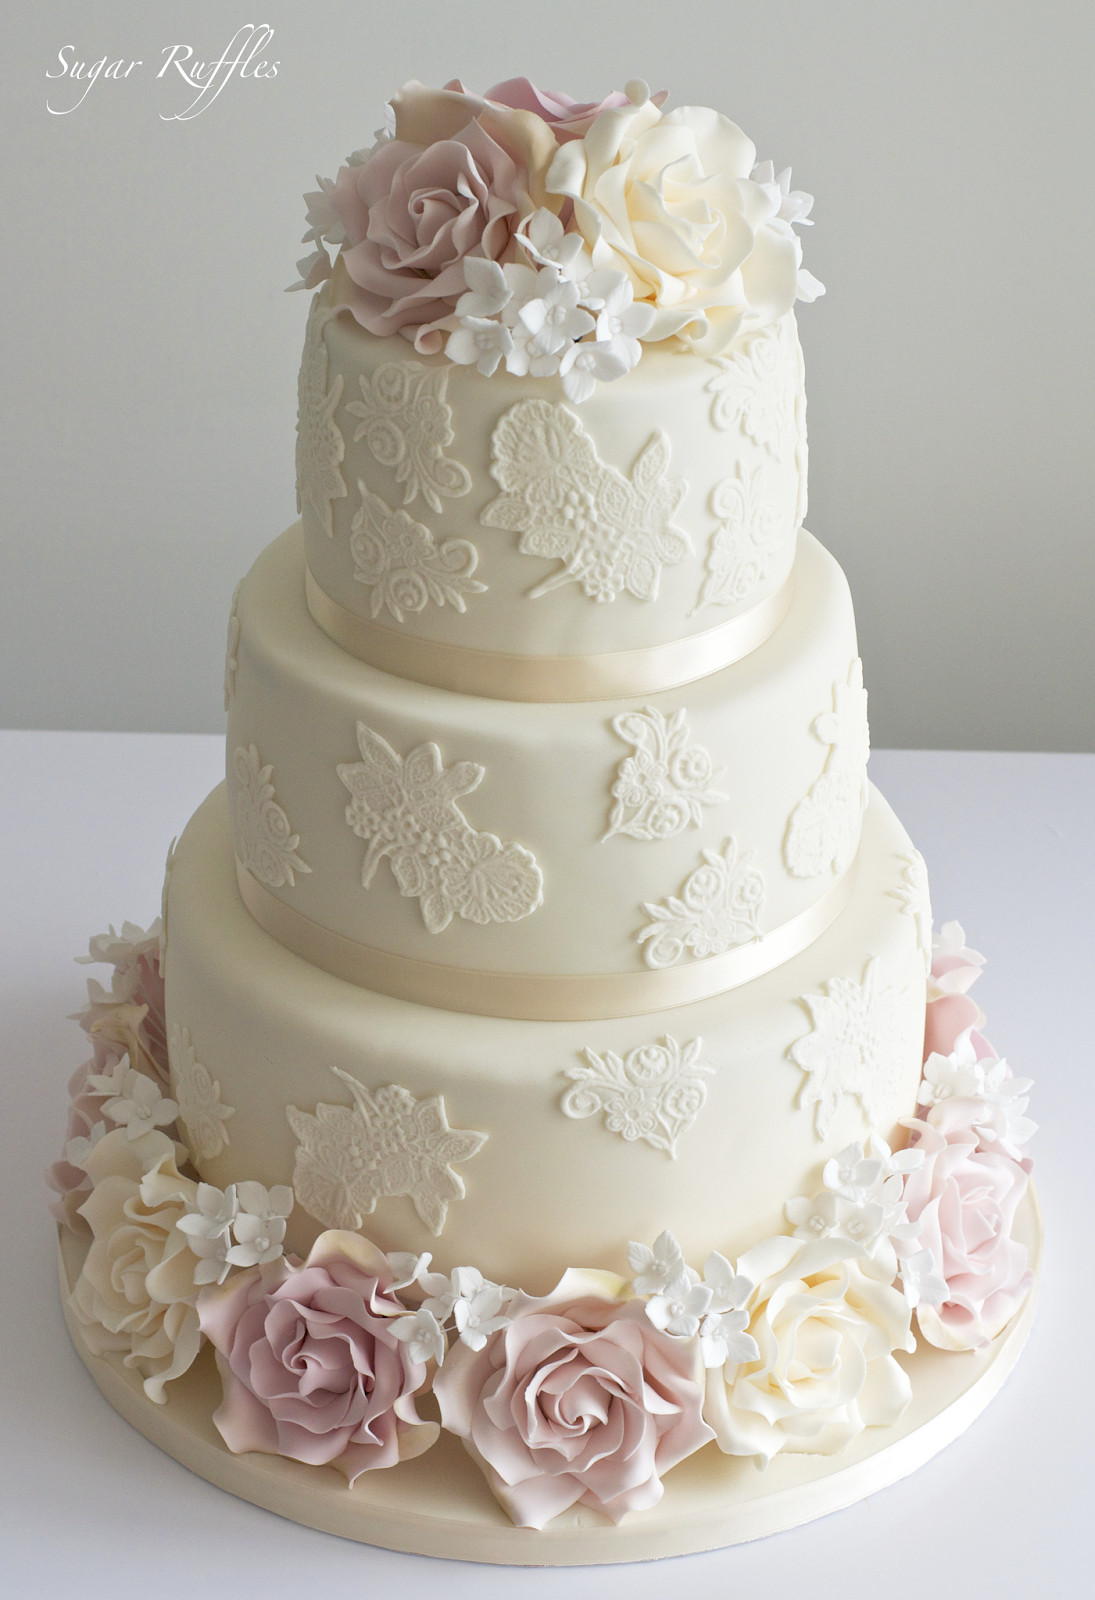 Sugar Free Wedding Cakes
 Sugar Ruffles Elegant Wedding Cakes Barrow in Furness